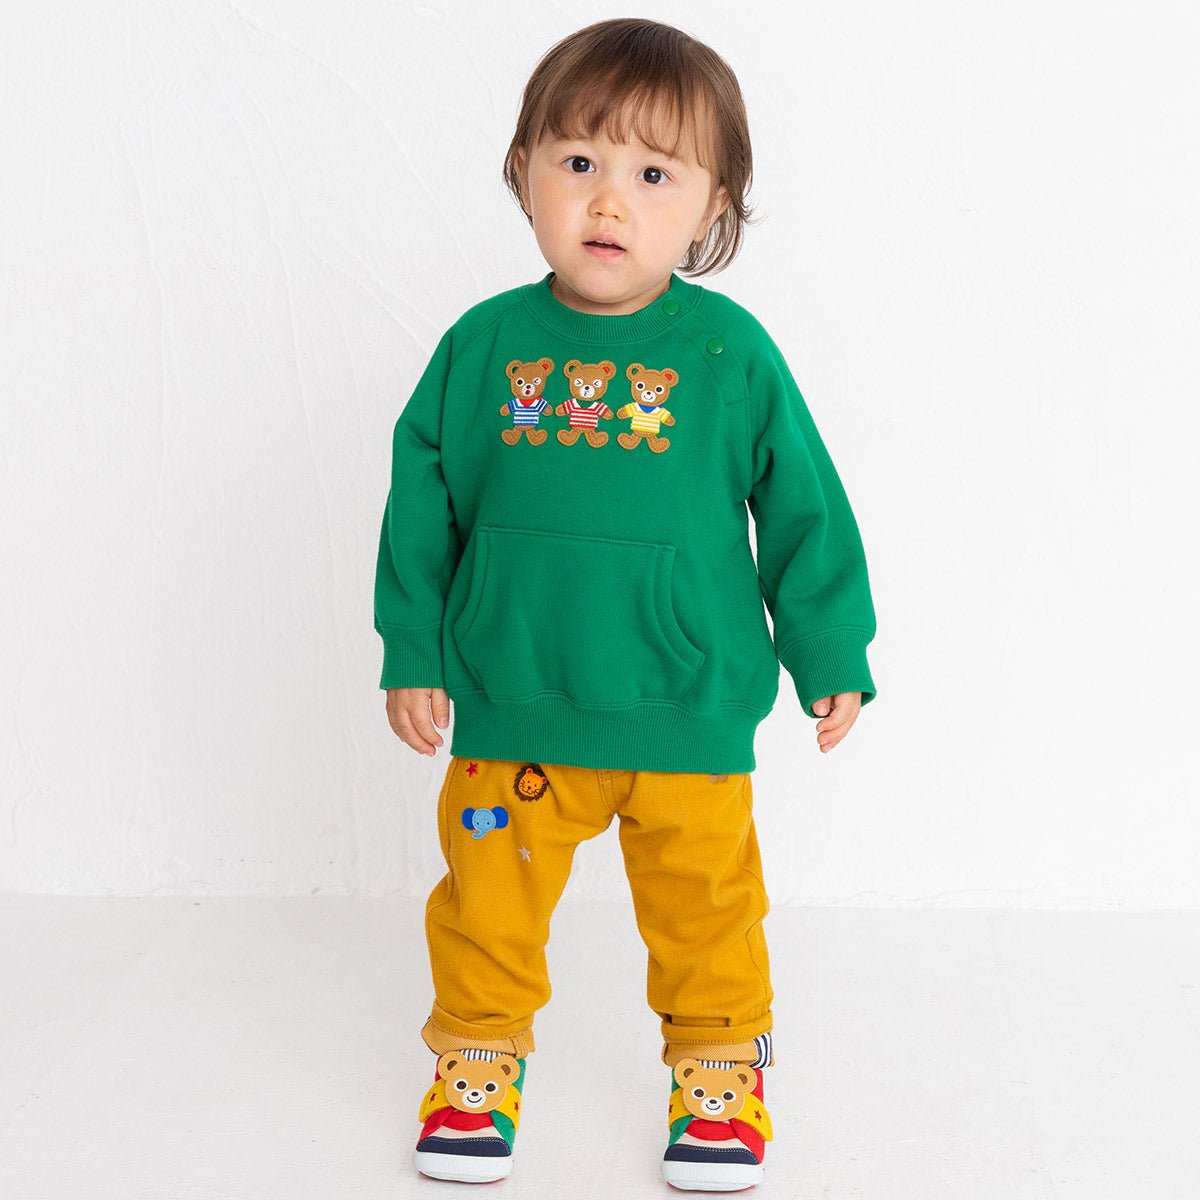 Kangaroo Pocket Sweatshirt - Pucchi - 13-5605-578-07-80